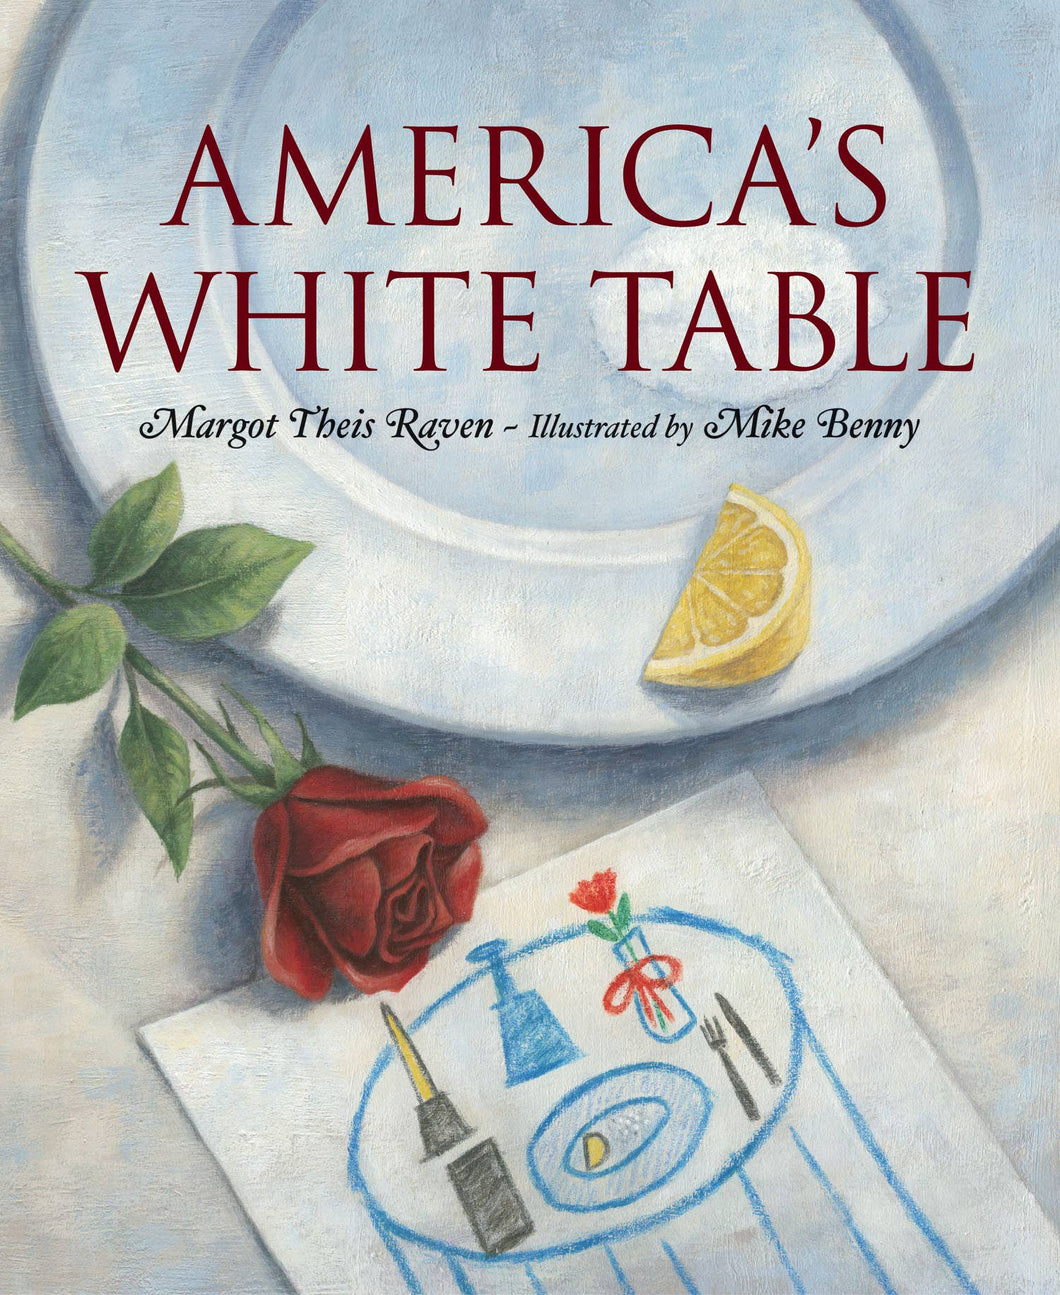 America's White Table picture book